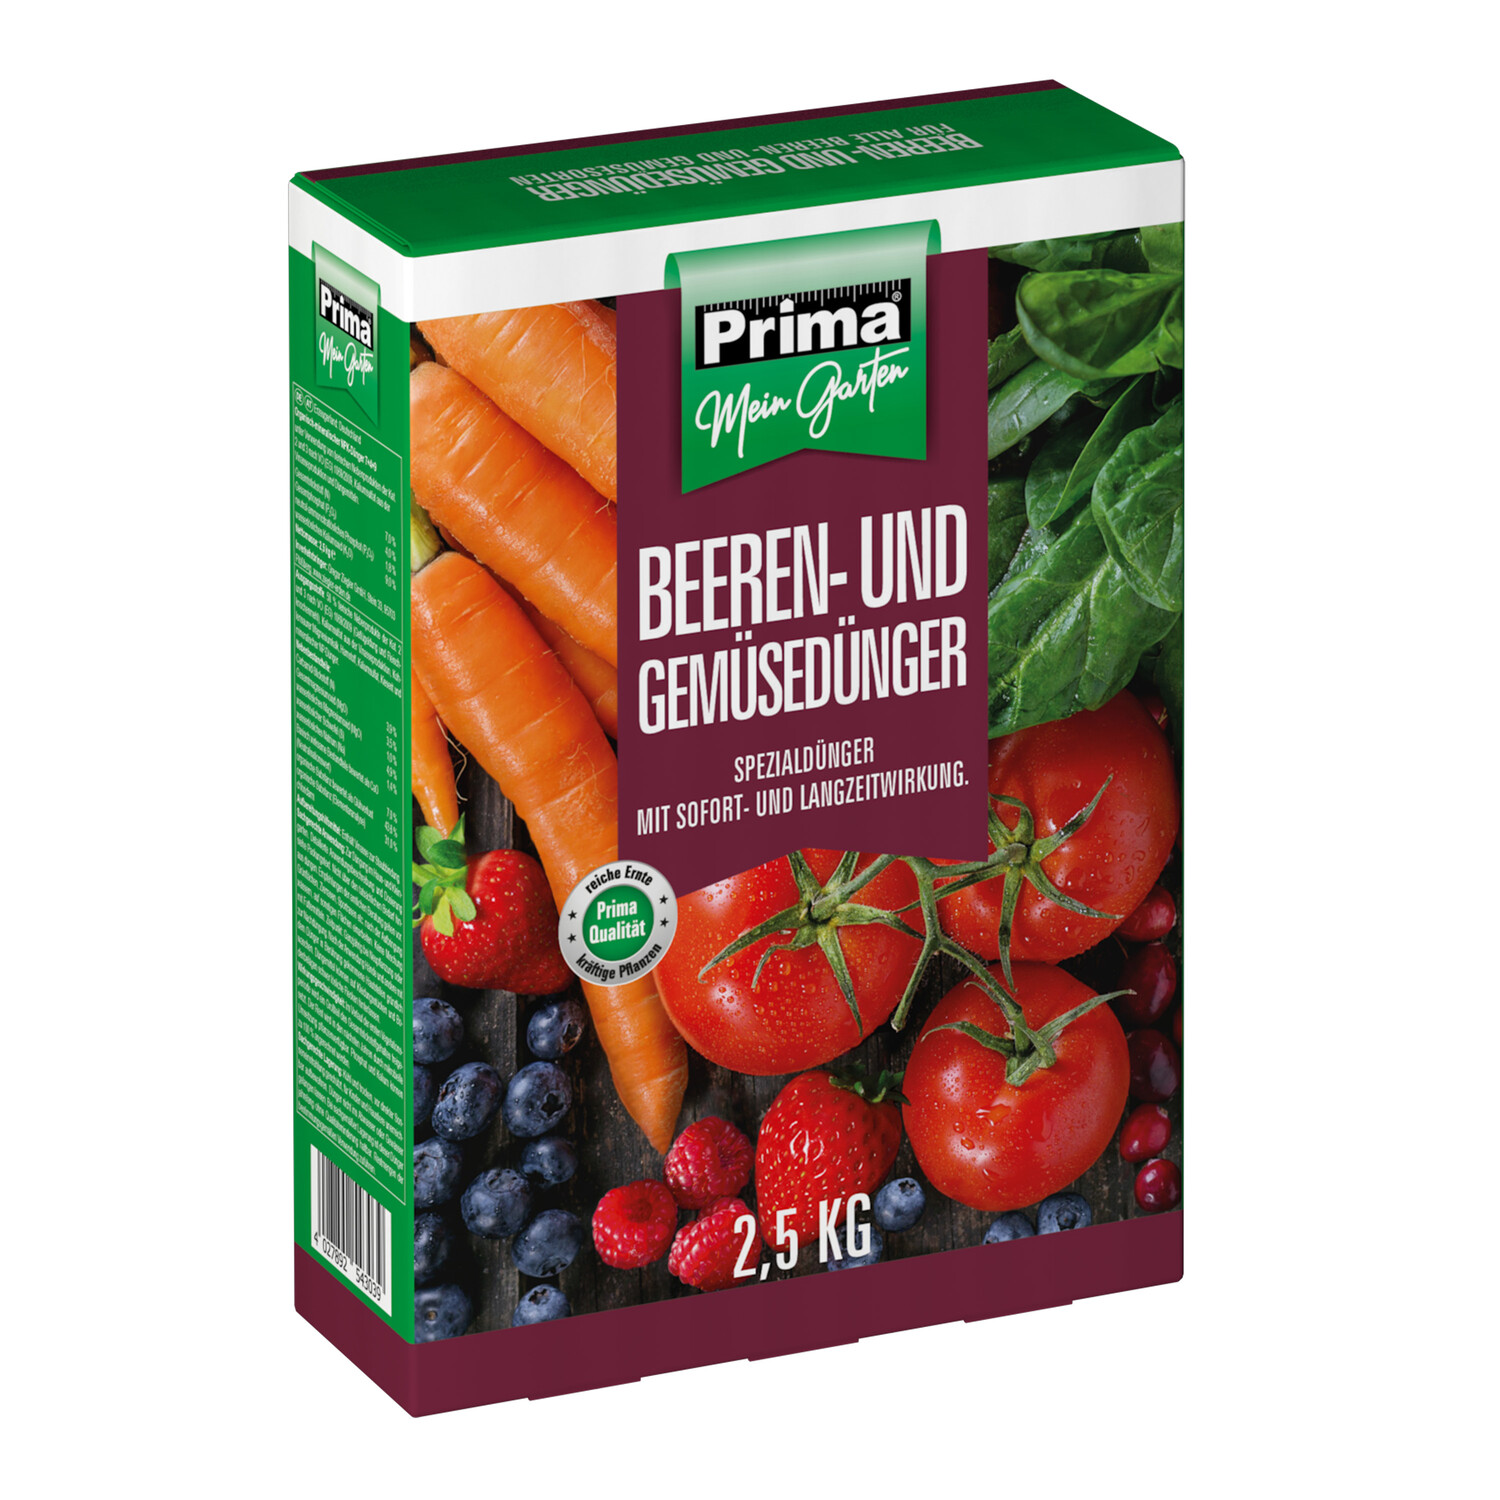 PRIMA Beeren- und Gemüsedünger 2,5 kg Sofort Langzeitwirkung NPK 7+4+9